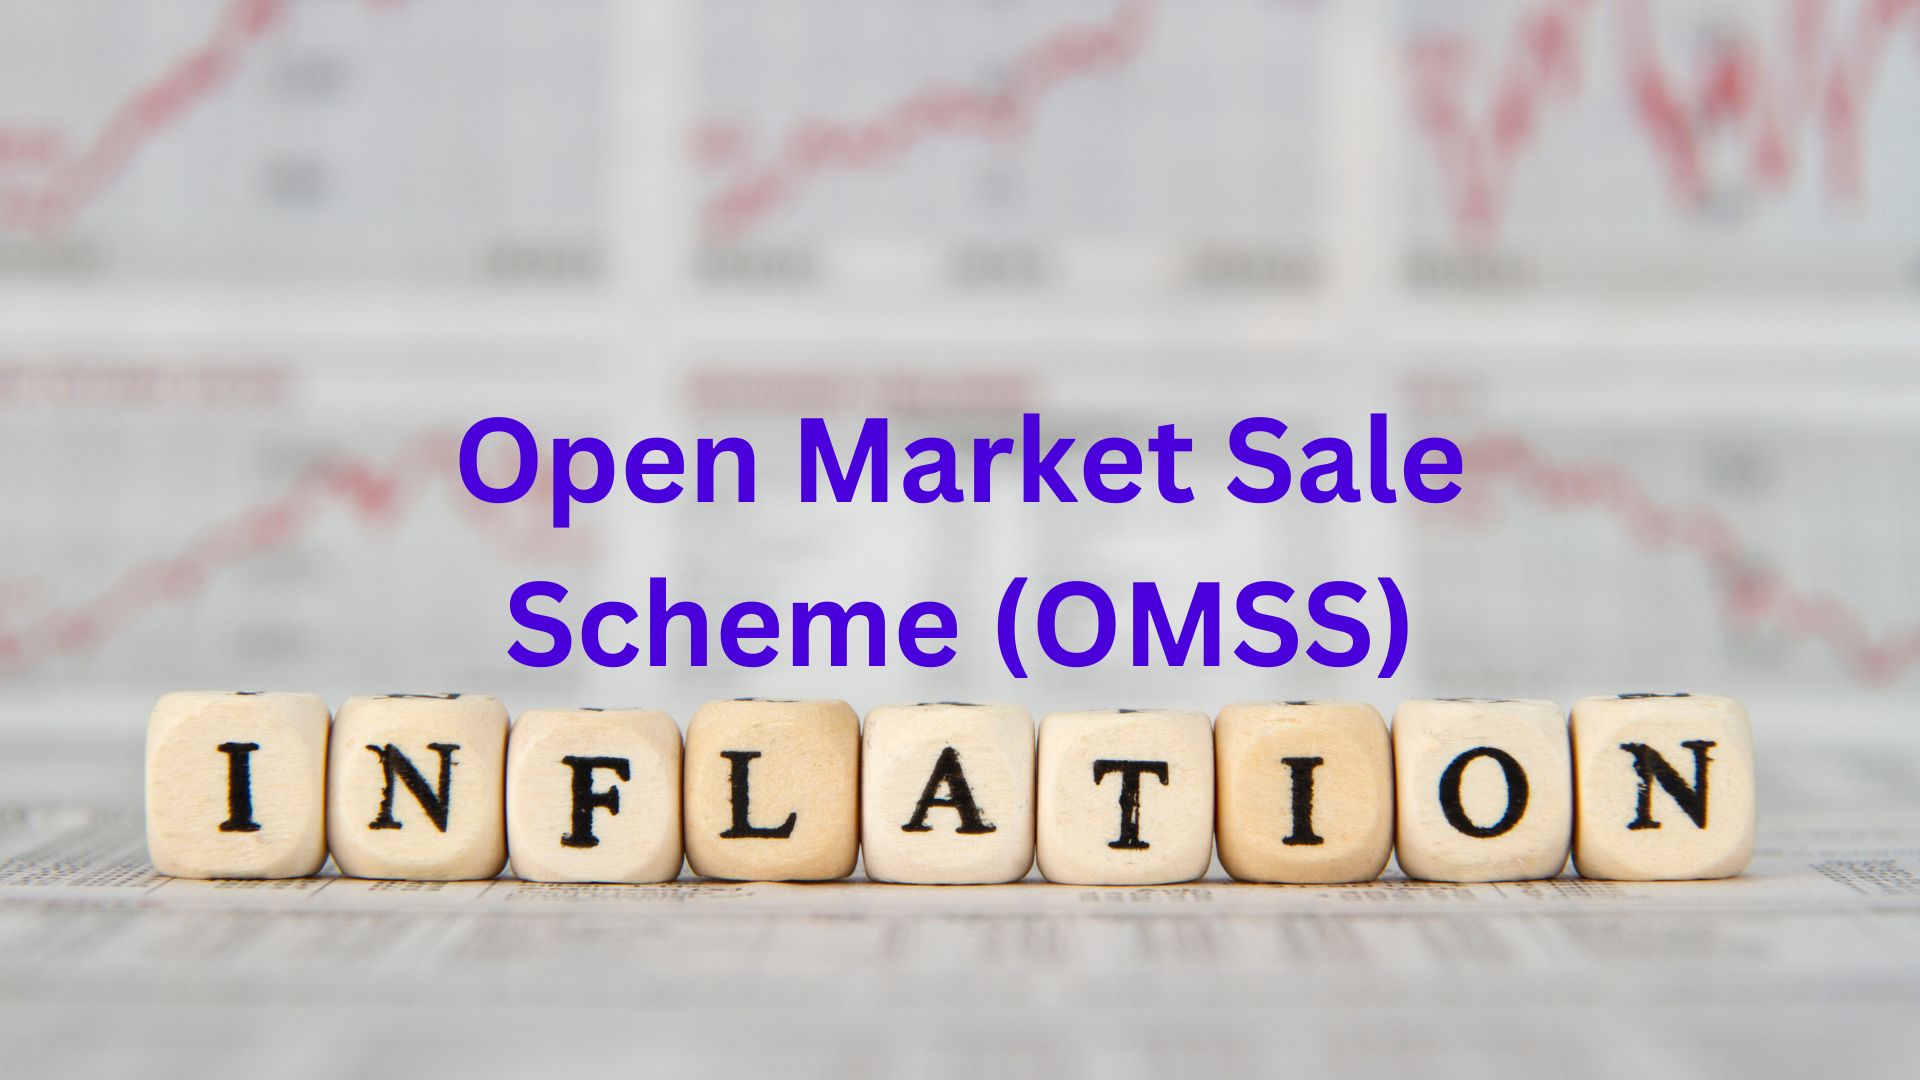 Open Market Sale Scheme (OMSS)